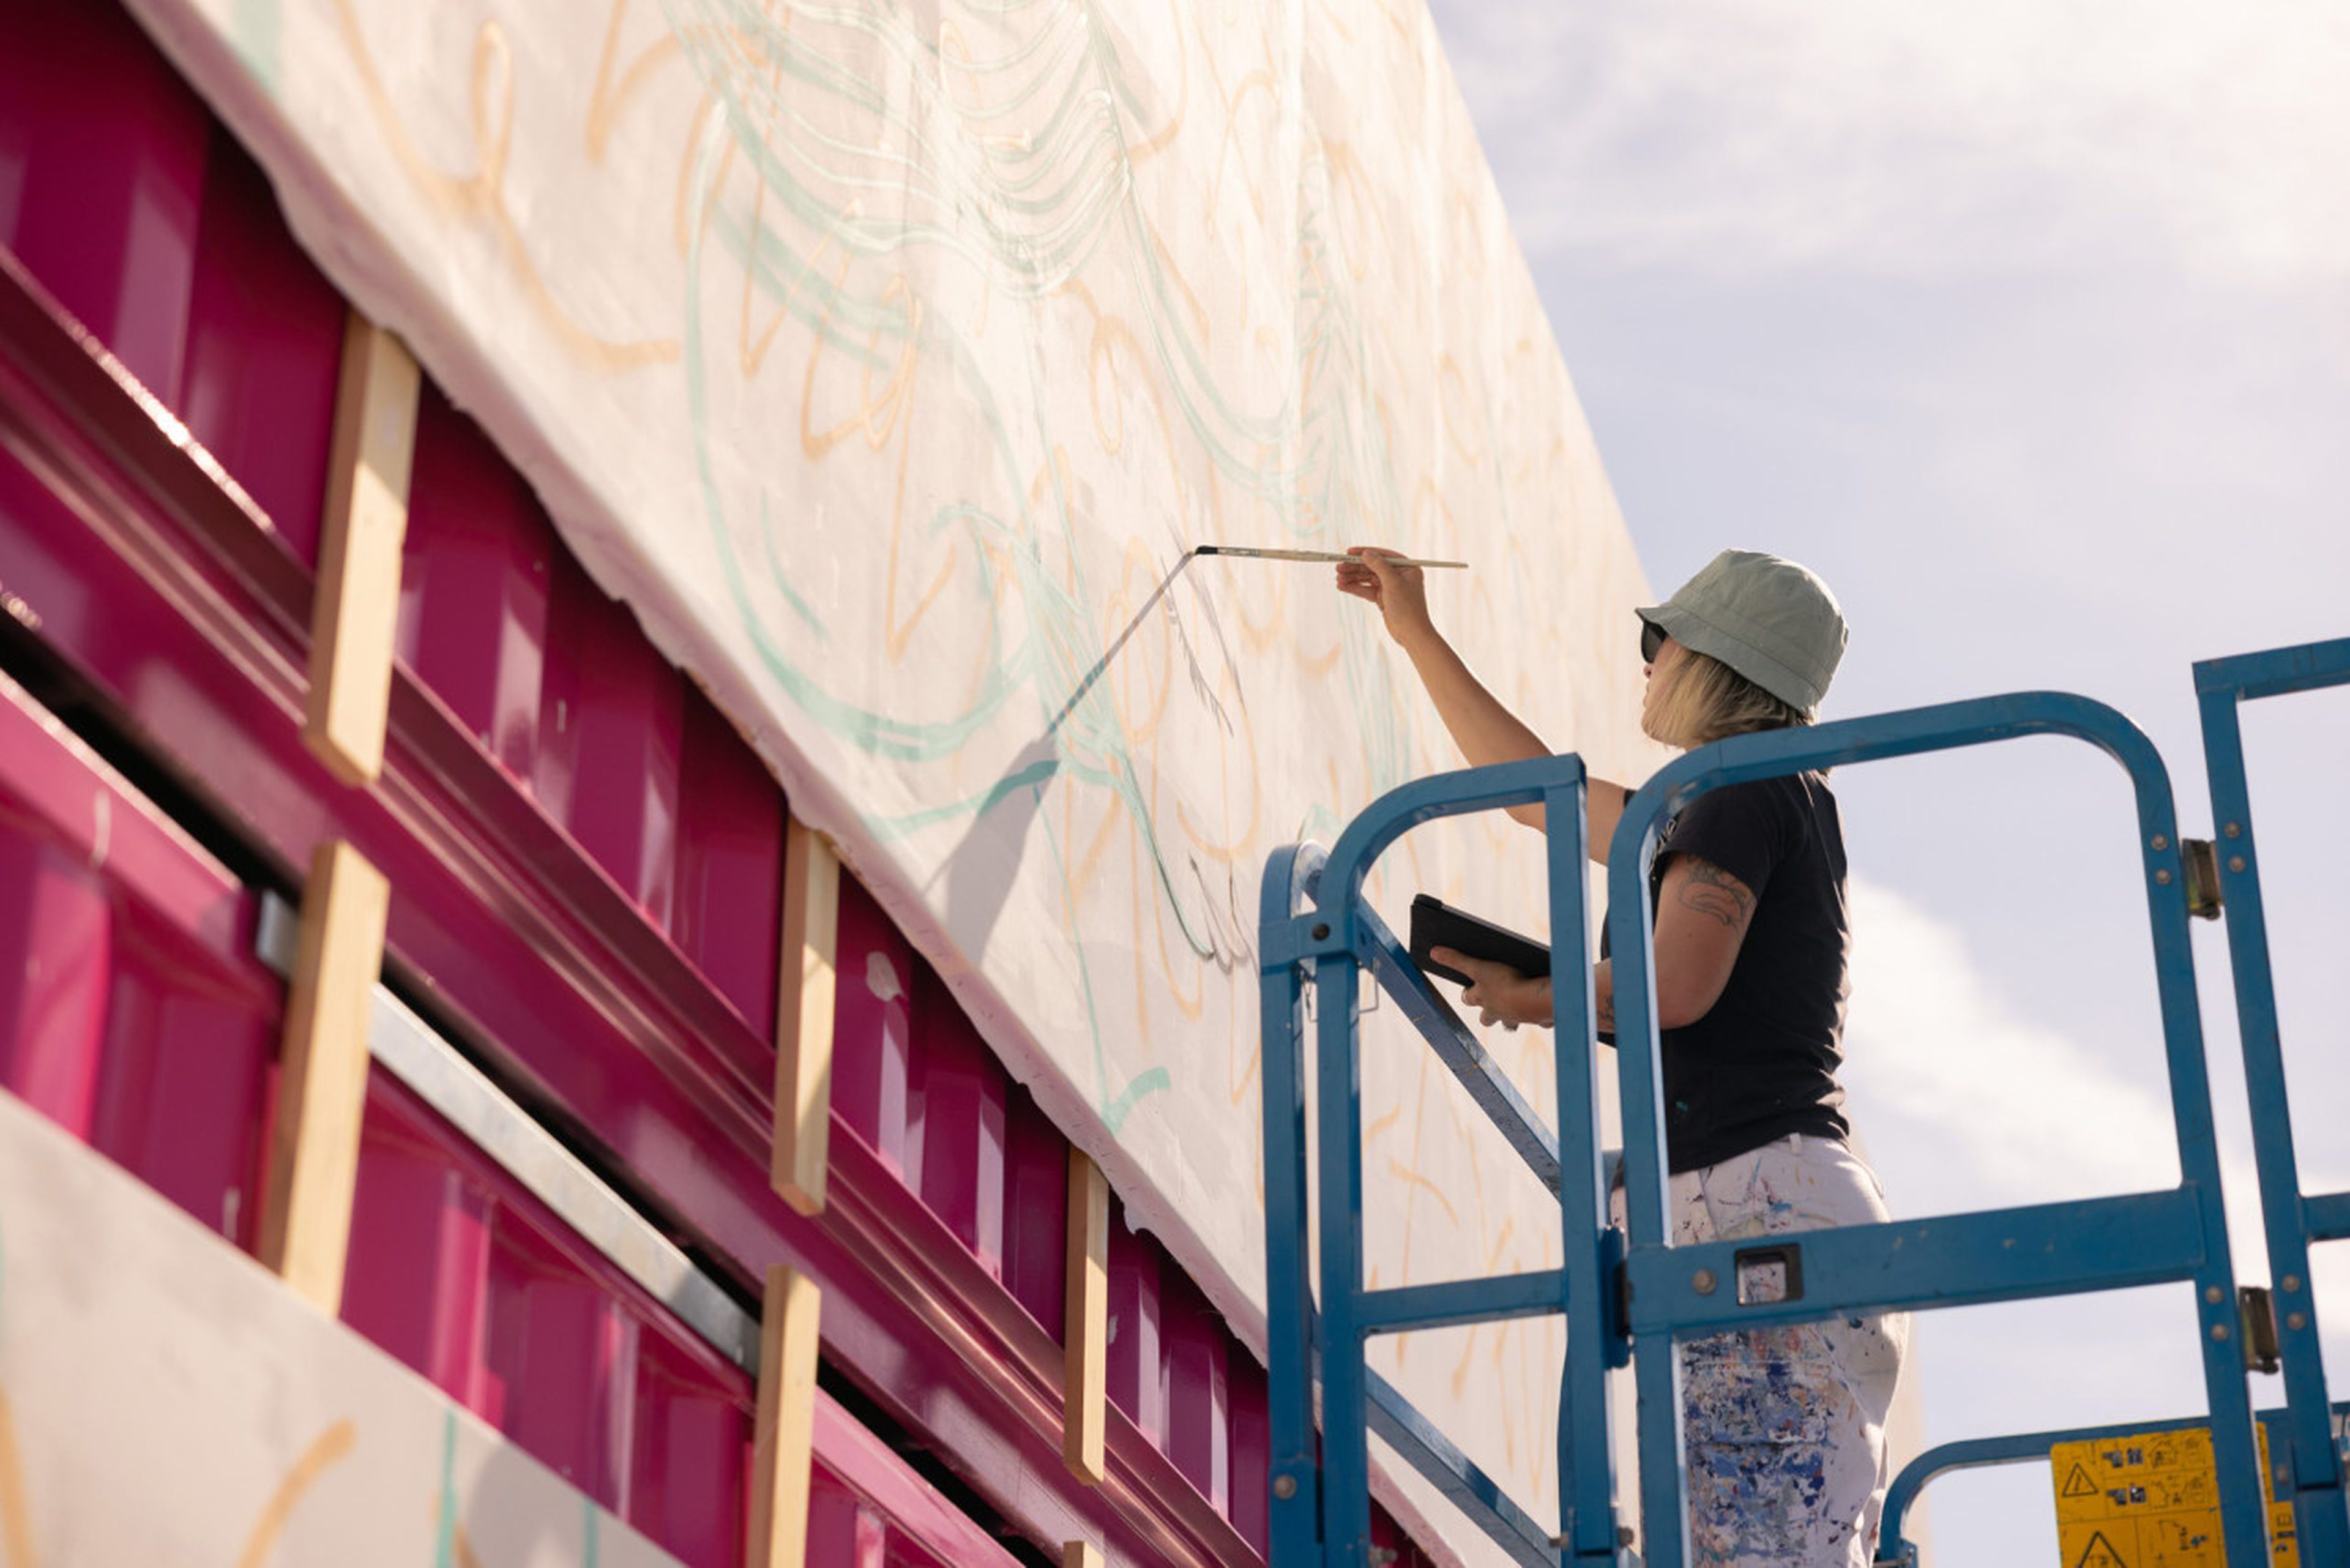 La artista Lidia Cao, en pleno proceso artístico del mural compuesto por 4 contenedores marítimos.